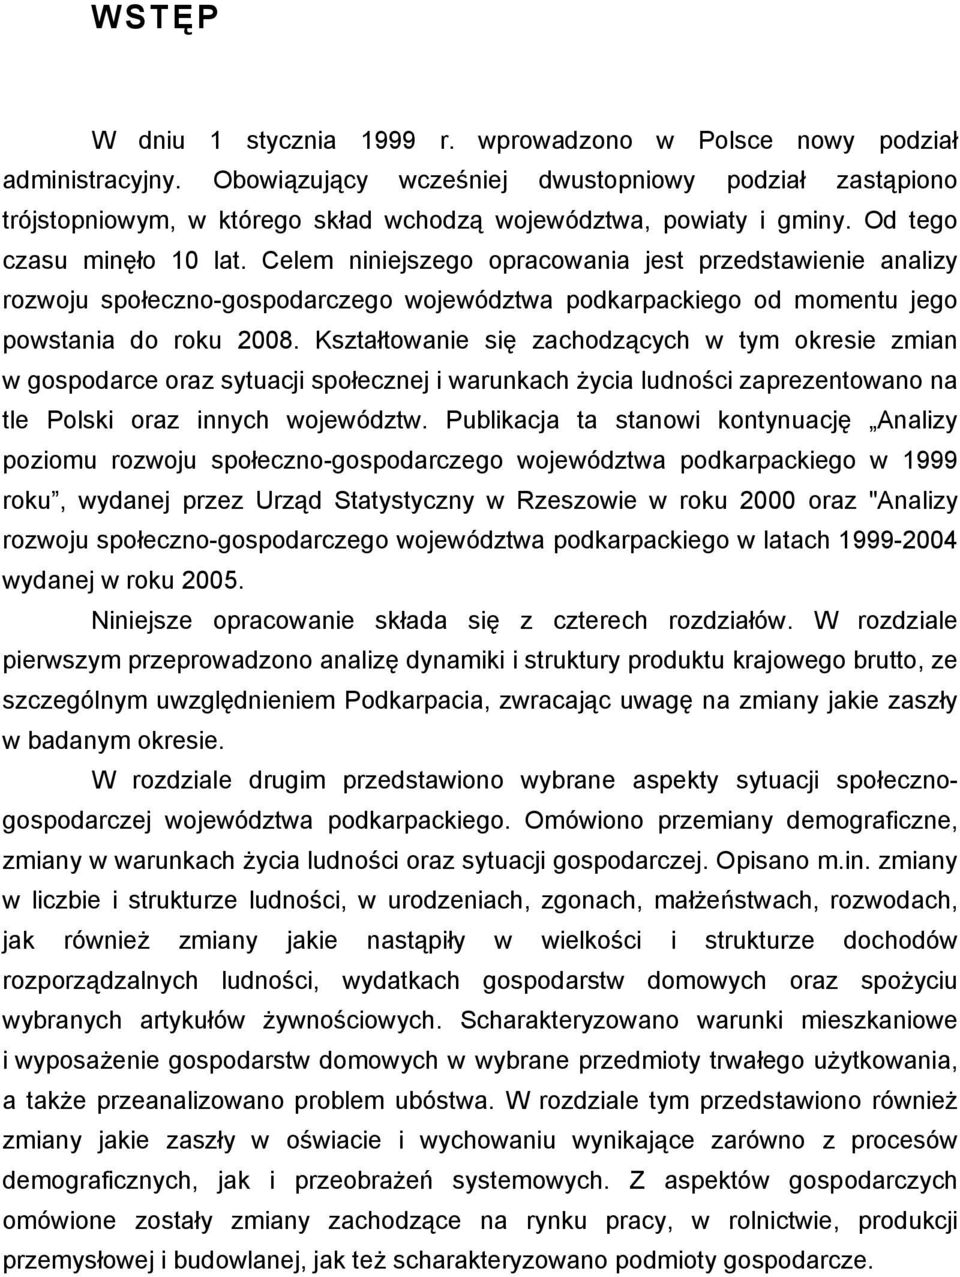 Celem niniejszego opracowania jest przedstawienie analizy rozwoju społeczno-gospodarczego województwa podkarpackiego od momentu jego powstania do roku 2008.